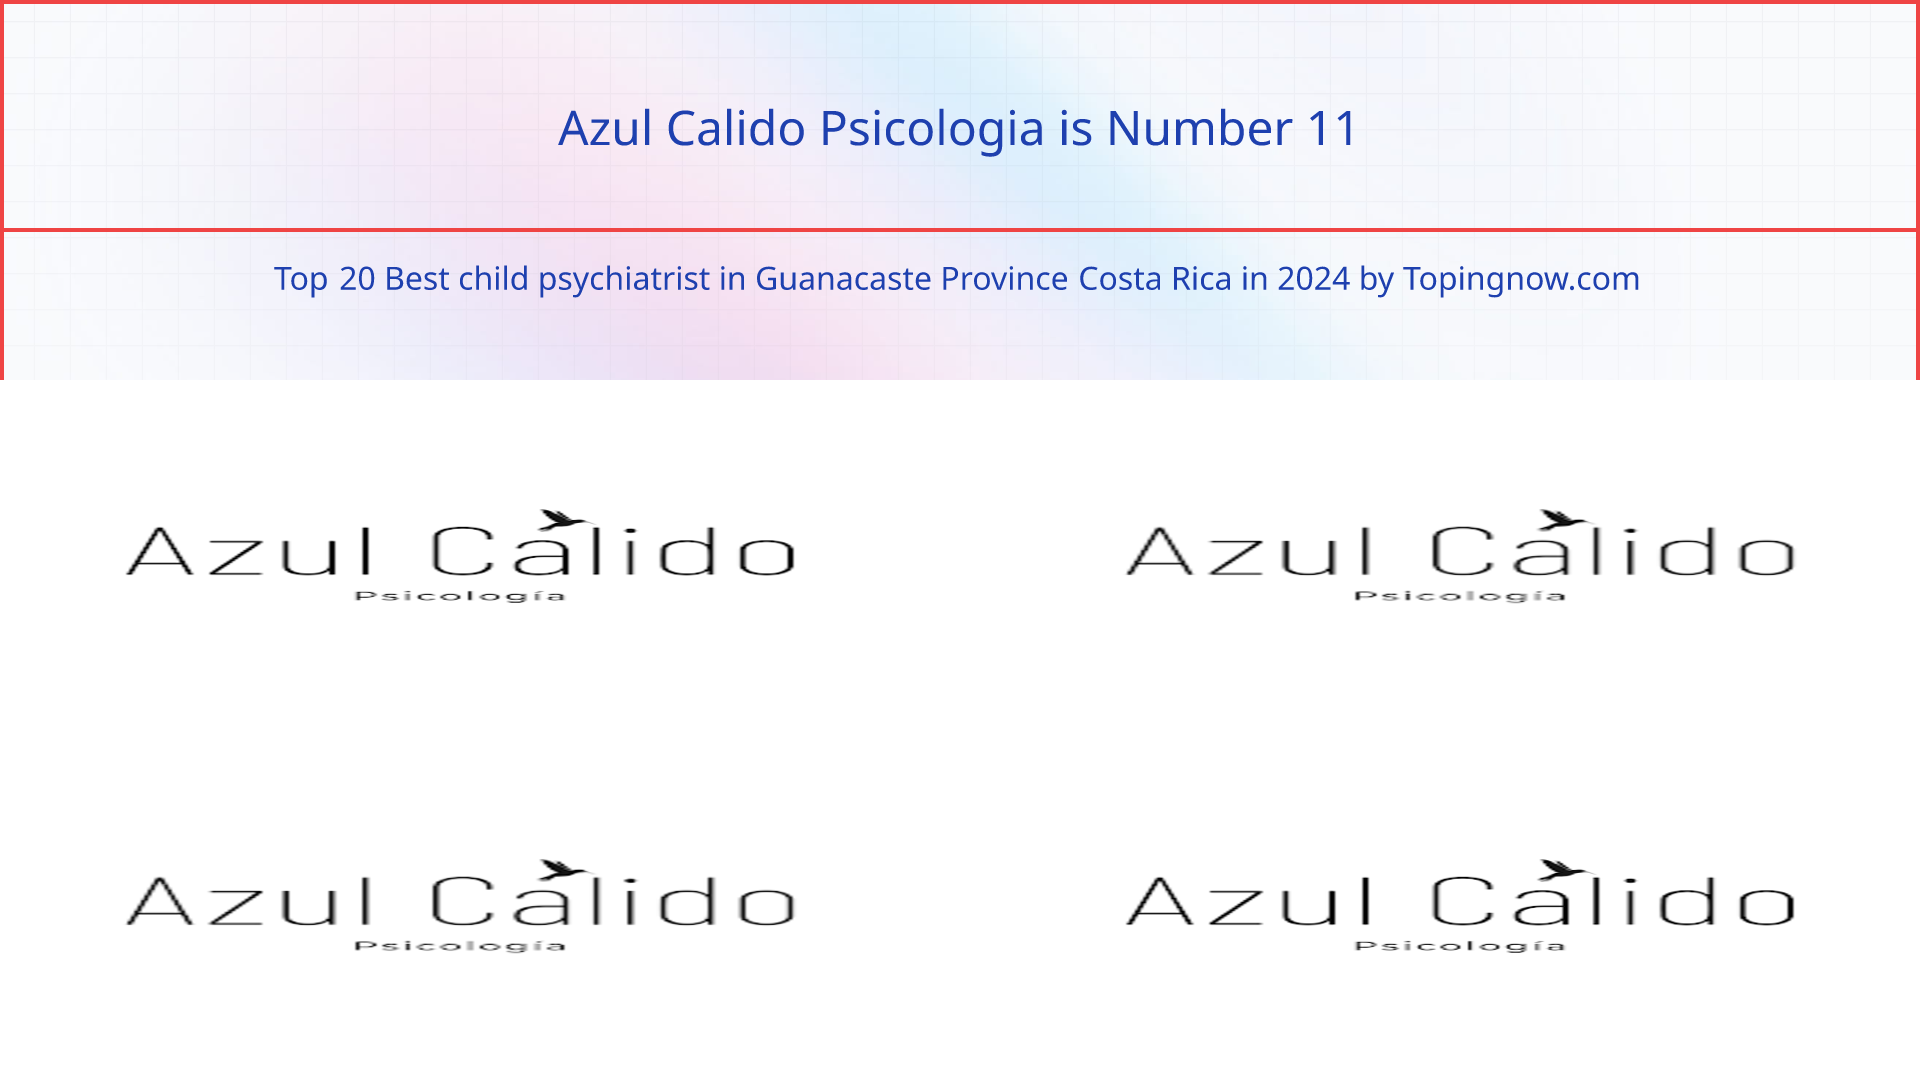 Azul Calido Psicologia: Top 20 Best child psychiatrist in Guanacaste Province Costa Rica in 2024